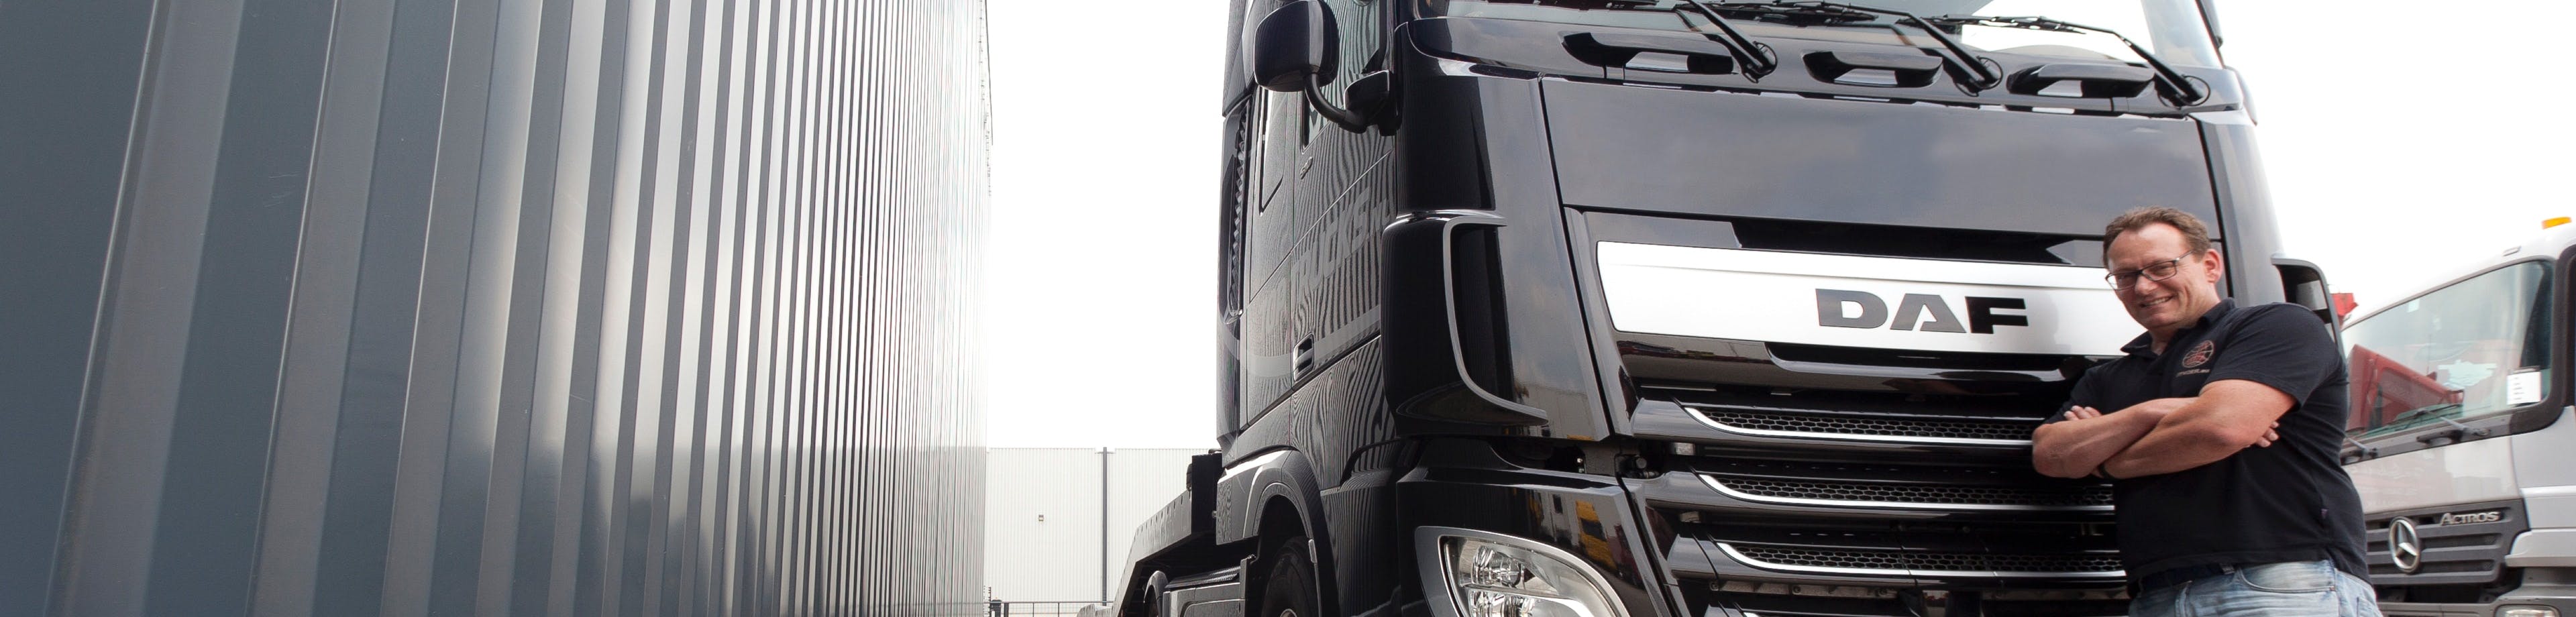 Een vrachtwagenchauffeur staat voor zijn vrachtwagen. Met de Vrachtautoverzekering bent u verzekerd voor schade die u met uw vrachtauto veroorzaakt.